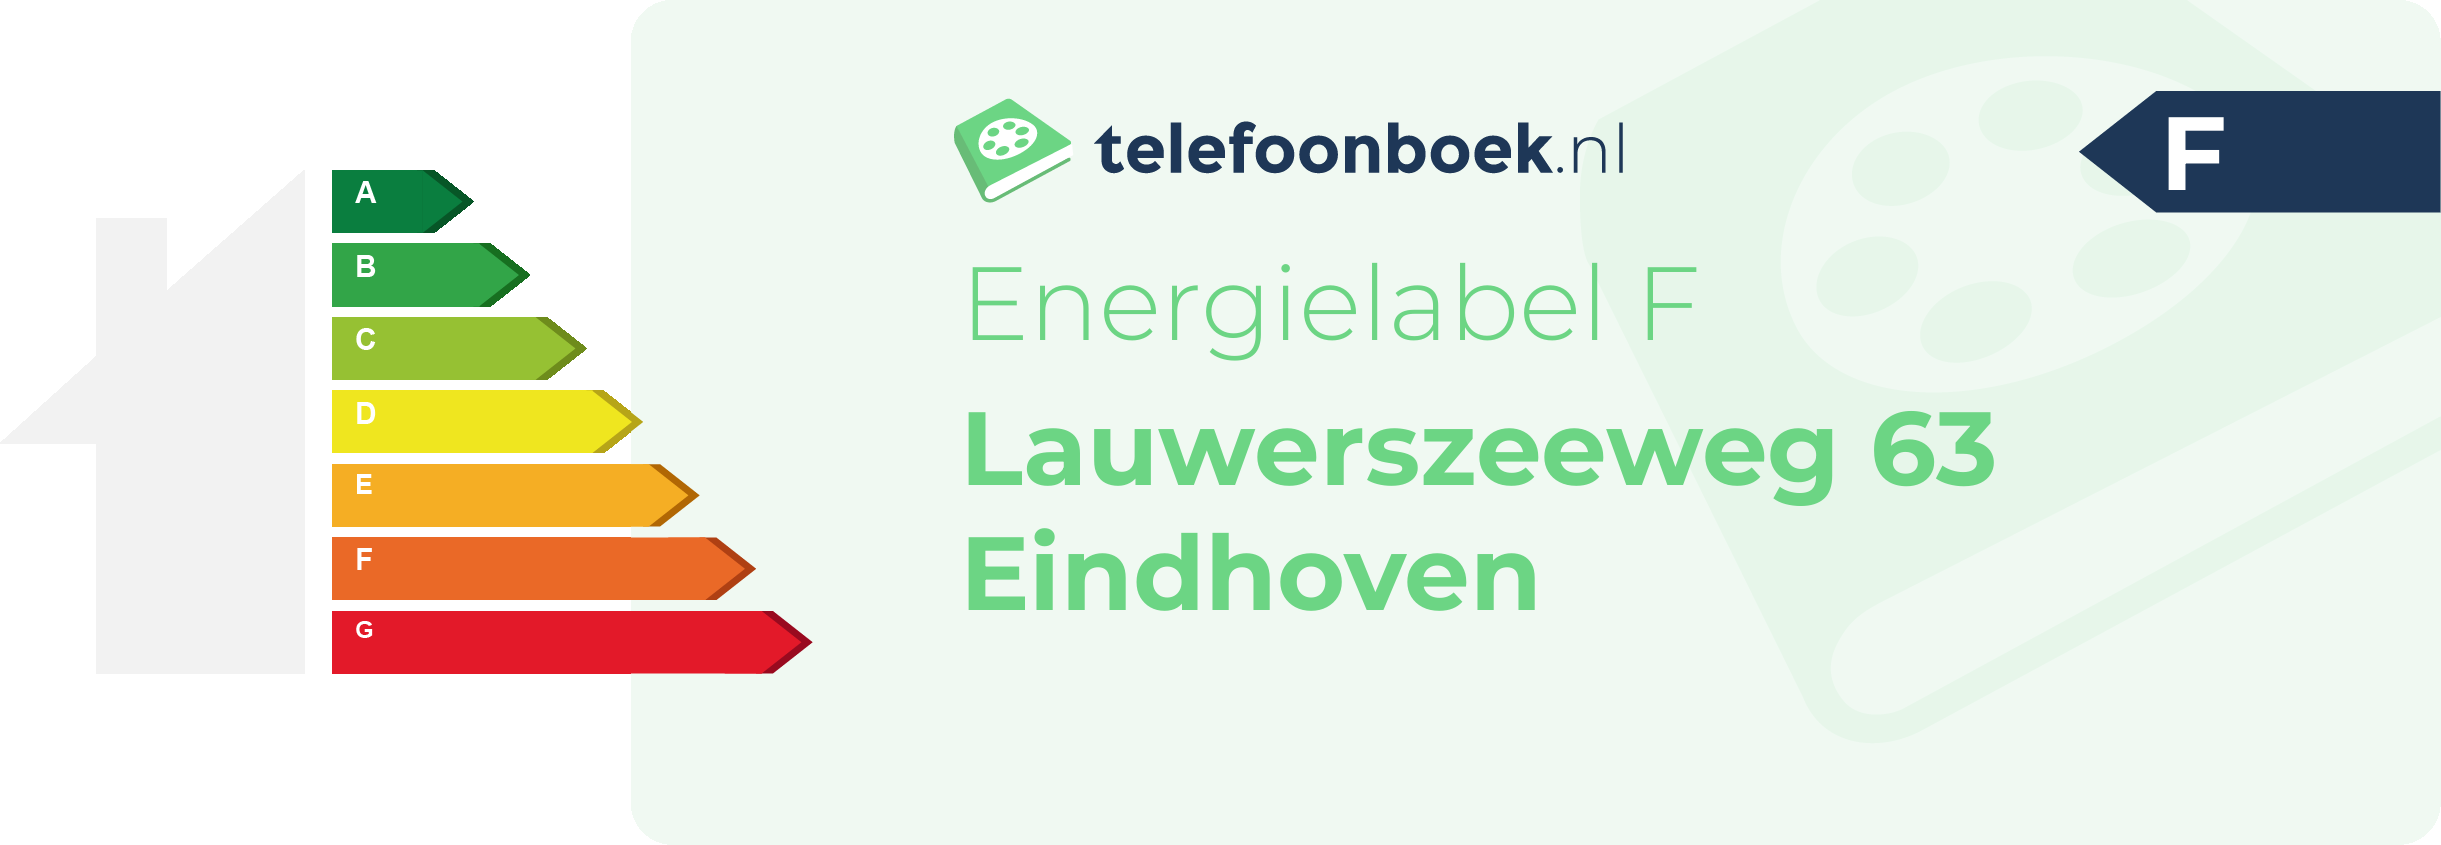 Energielabel Lauwerszeeweg 63 Eindhoven